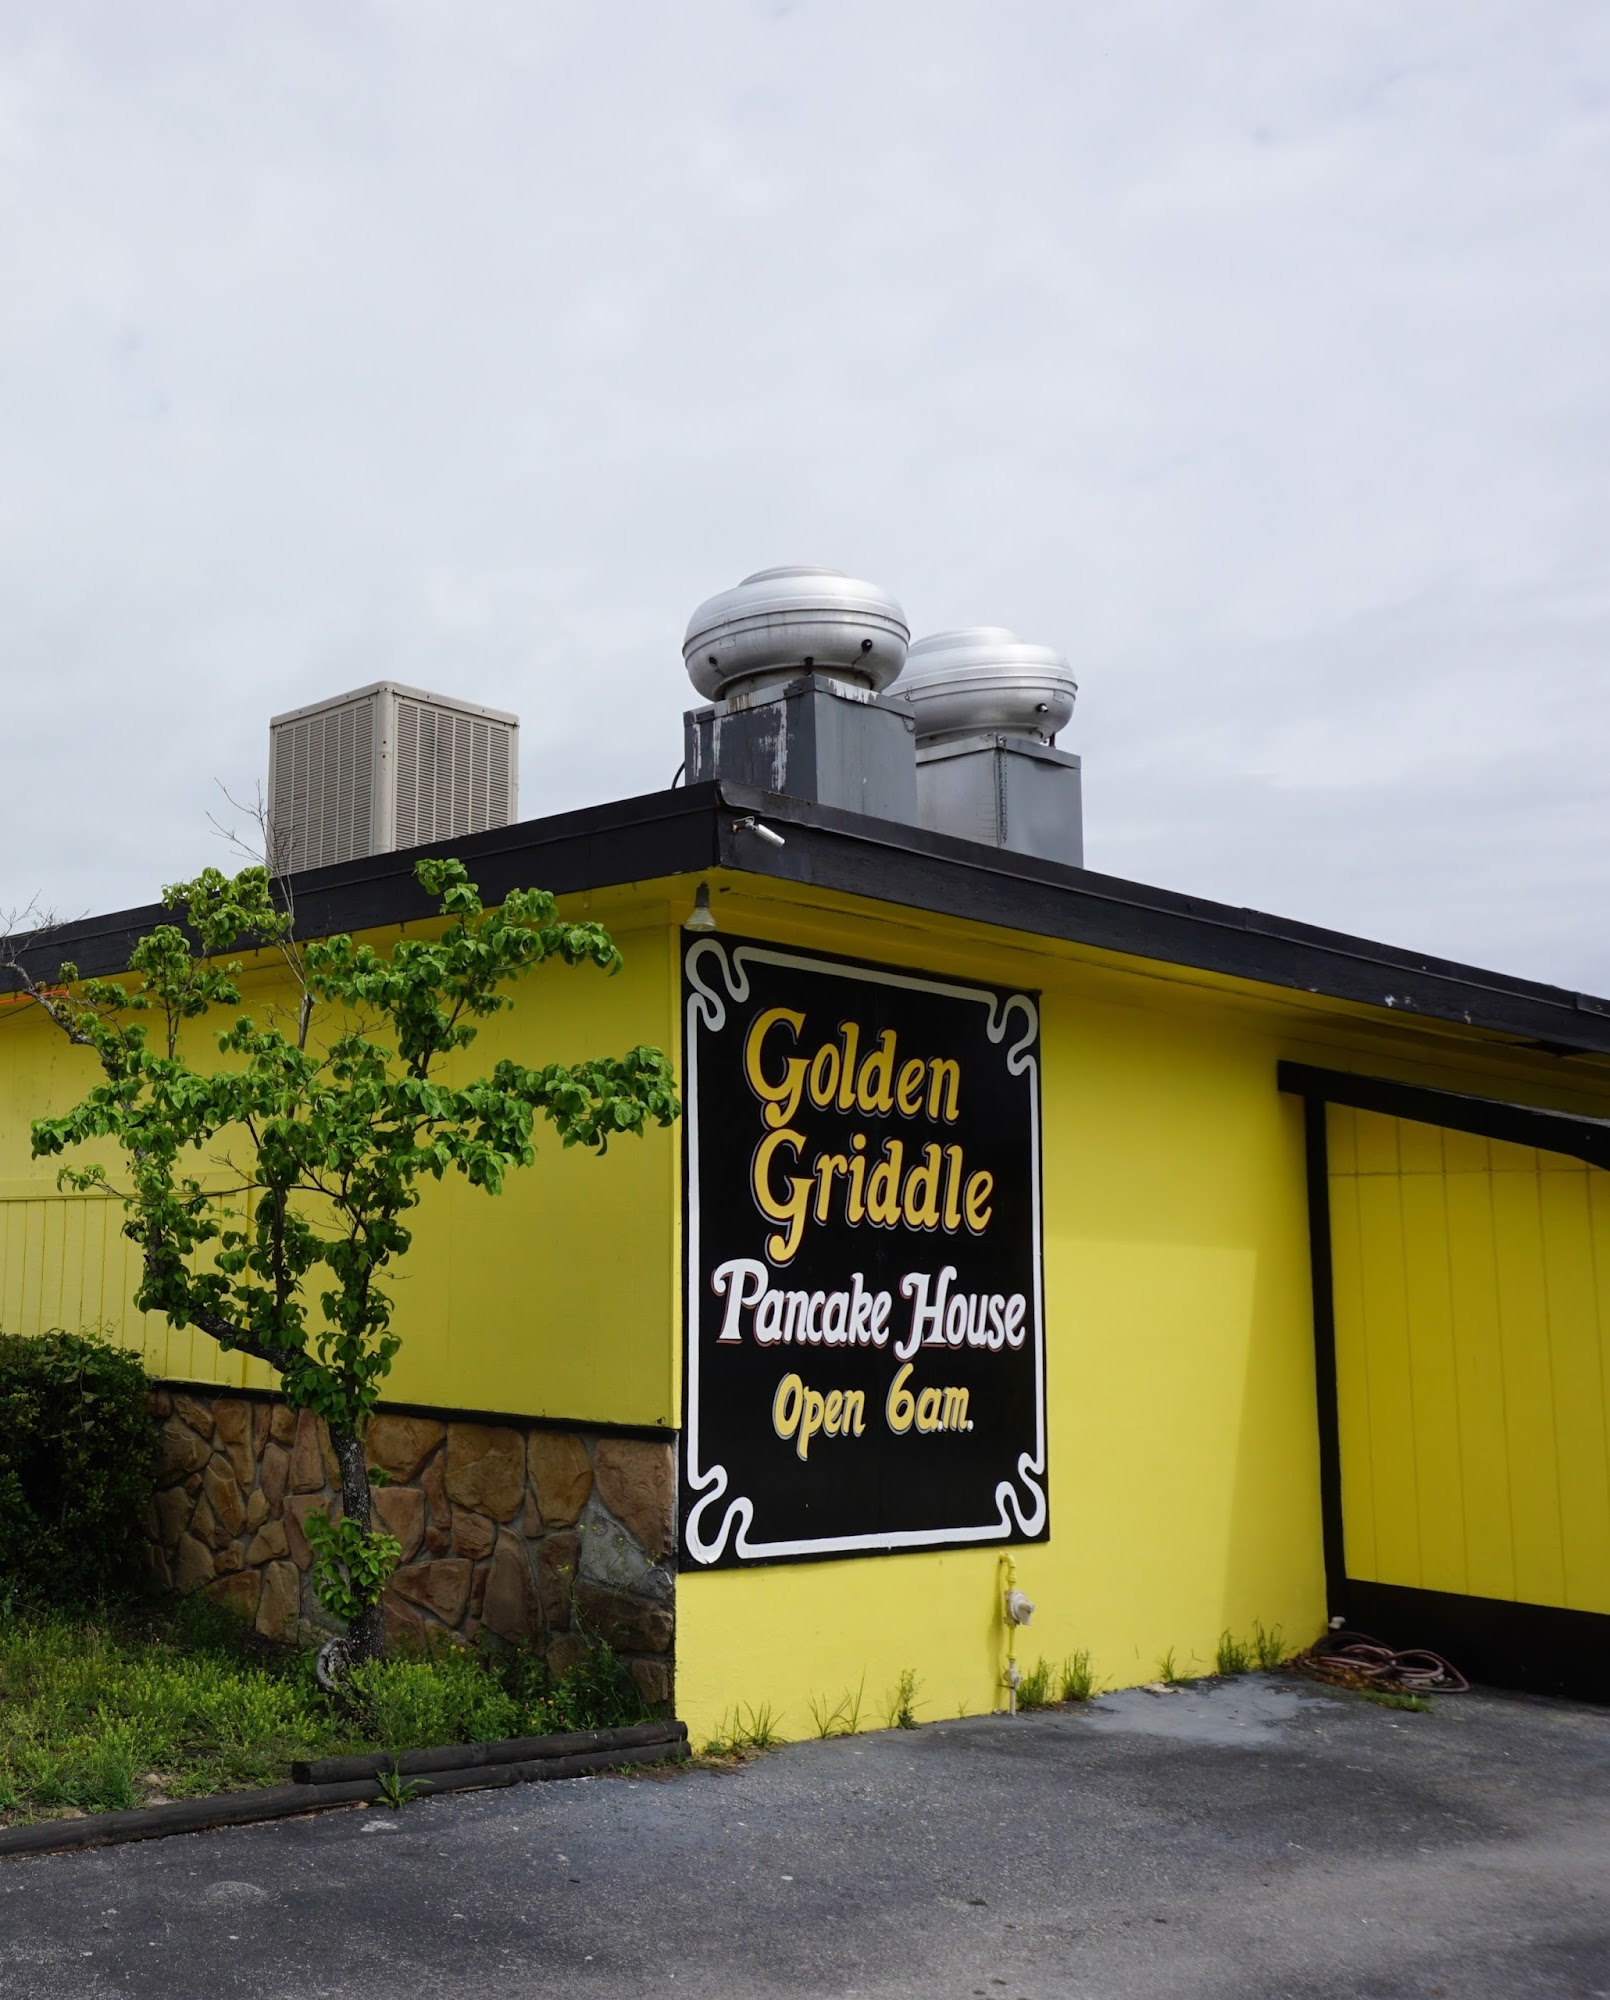 Golden Griddle Pancake House